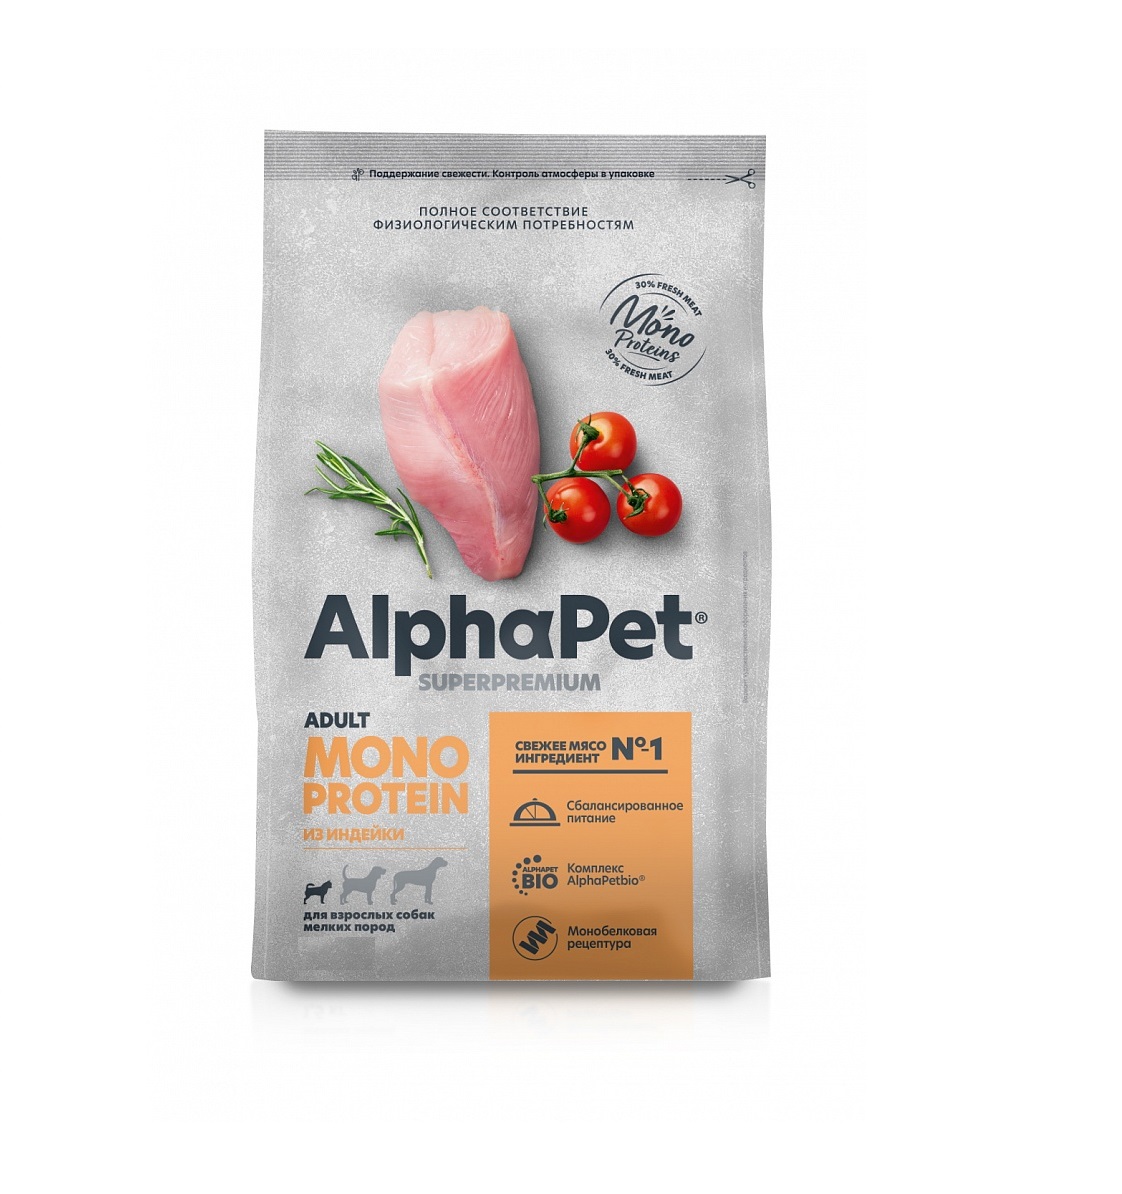 АльфаПет Монопротеин 500гр - для Мелких Собак, Индейка (Alpha Pet Monoprotein)